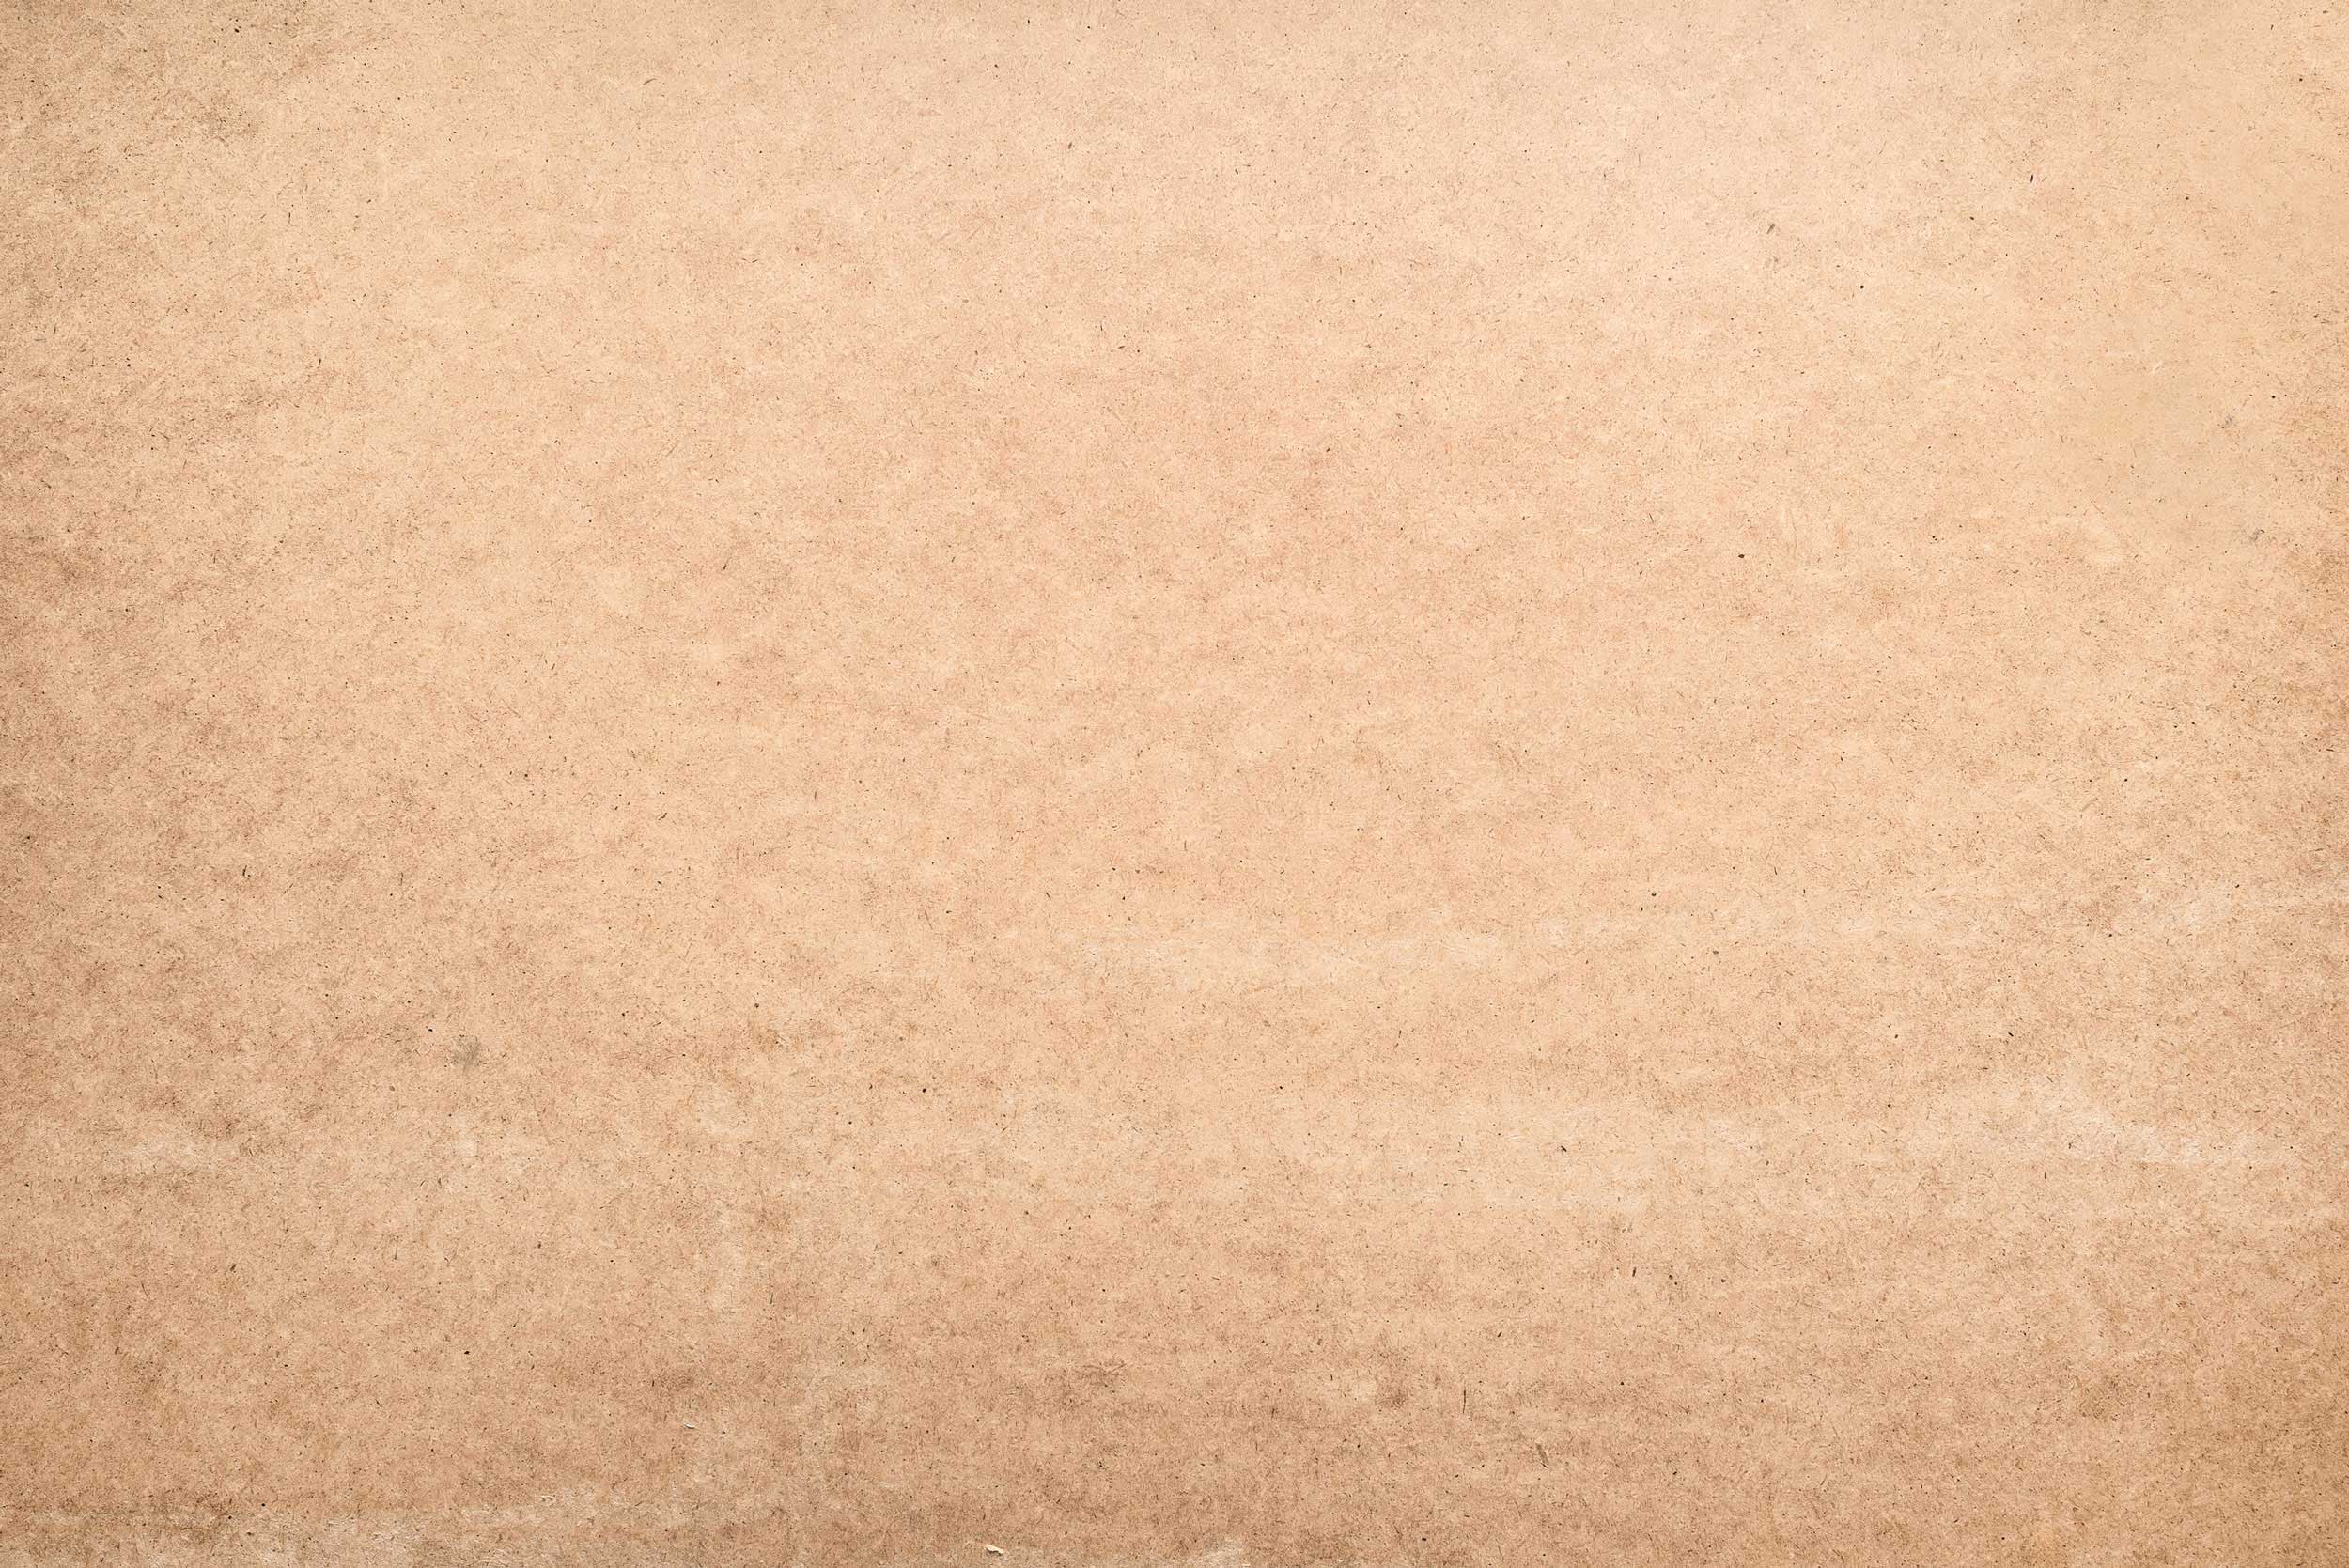 Текстура крафтовой бумаги бежевого цвета с коричневым оттенком.